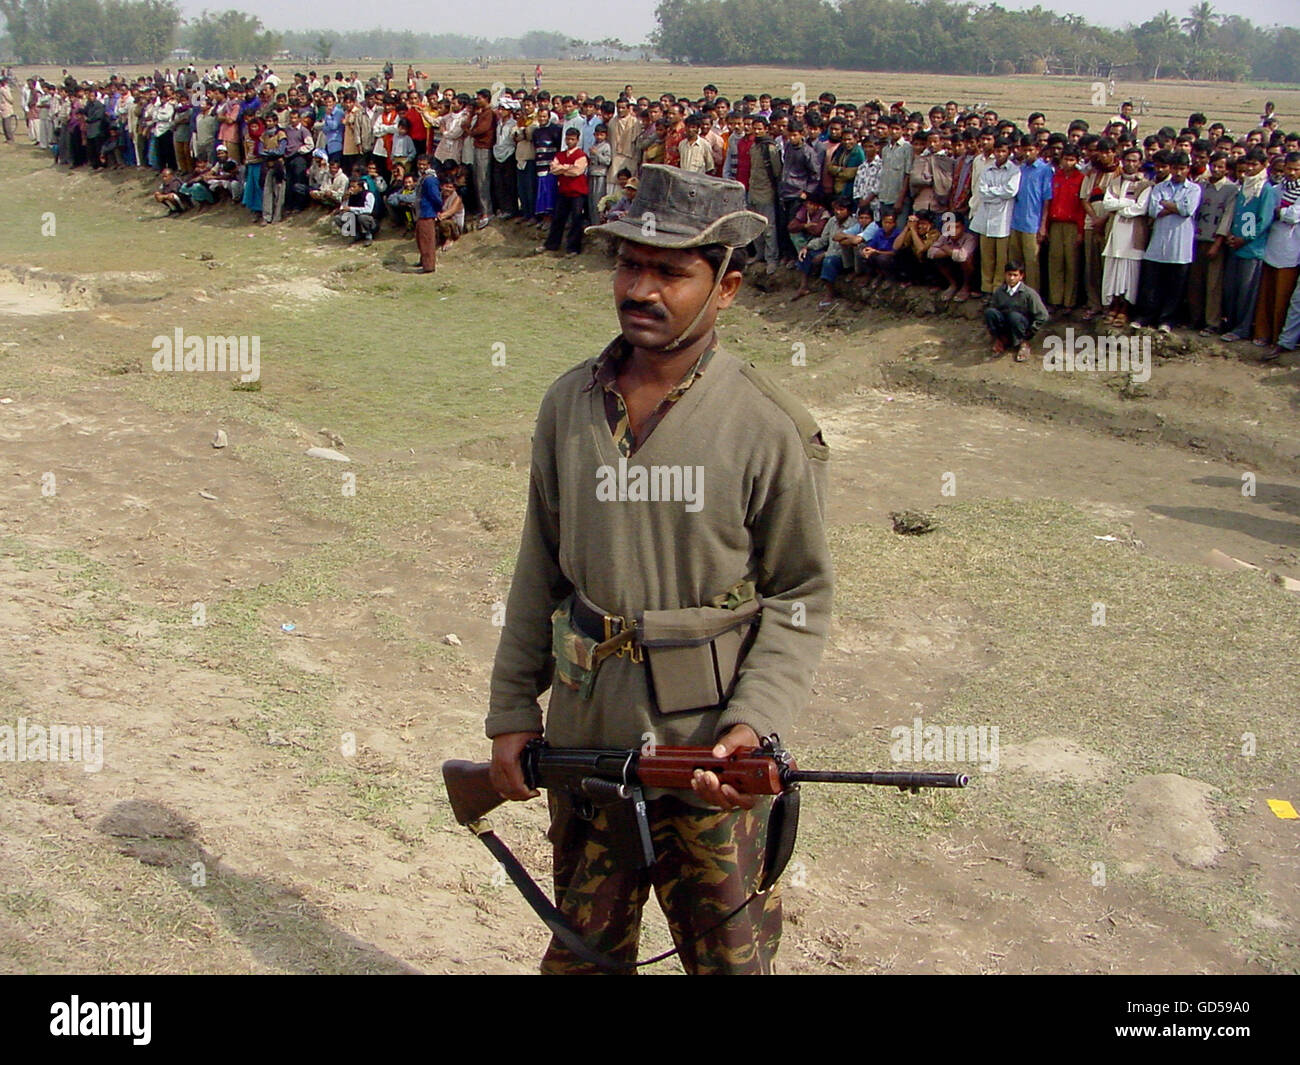 Los hombres del ejército controlando la multitud Foto de stock